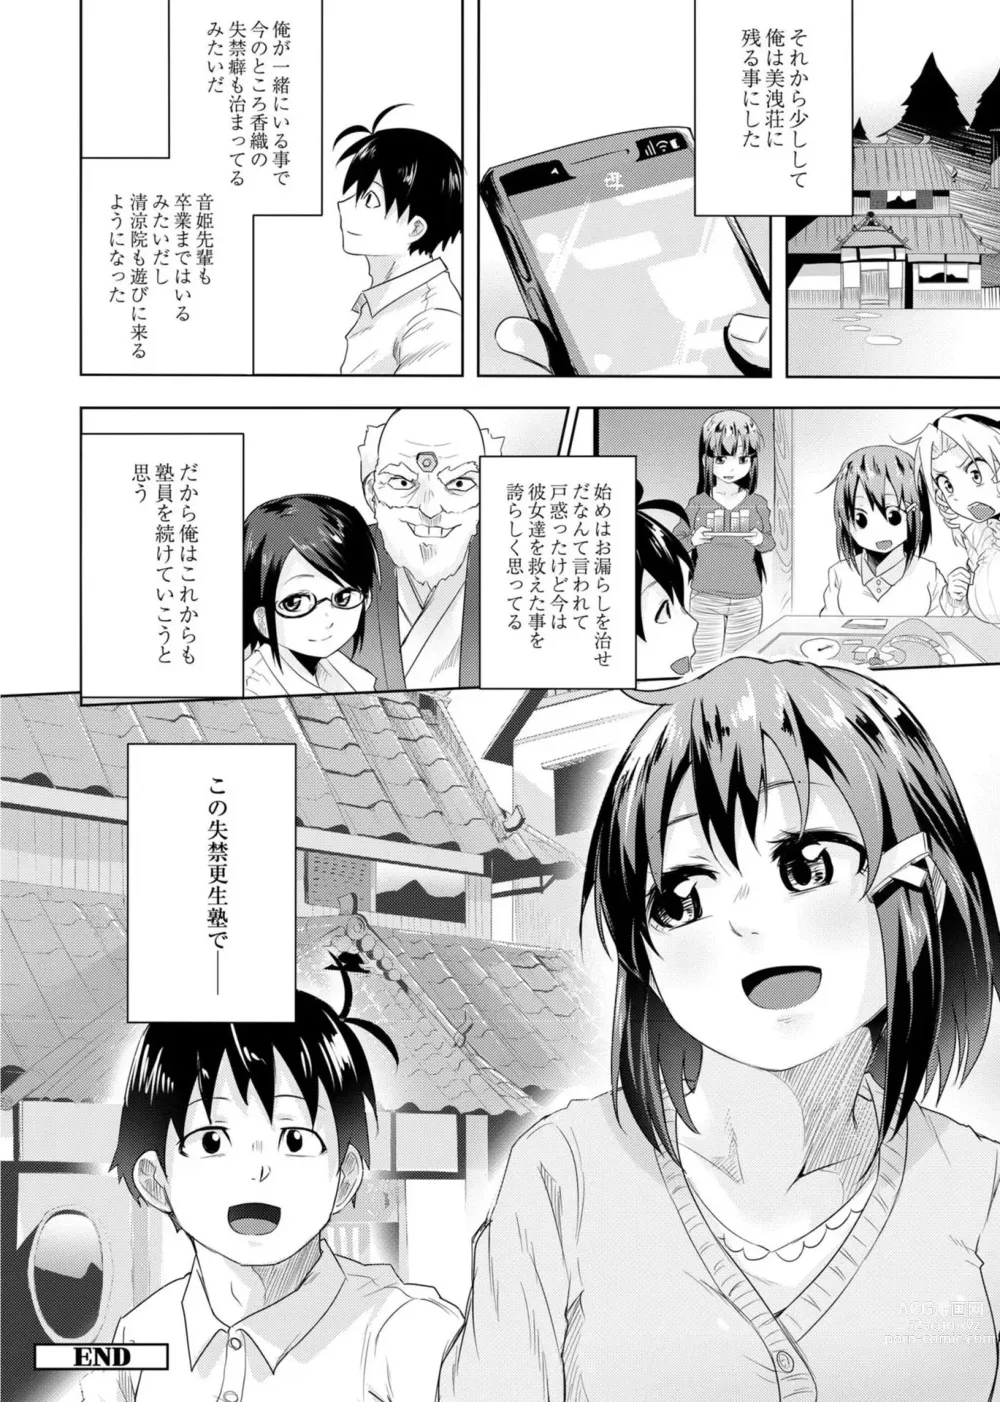 Page 206 of manga Koi no Shikkin Academia